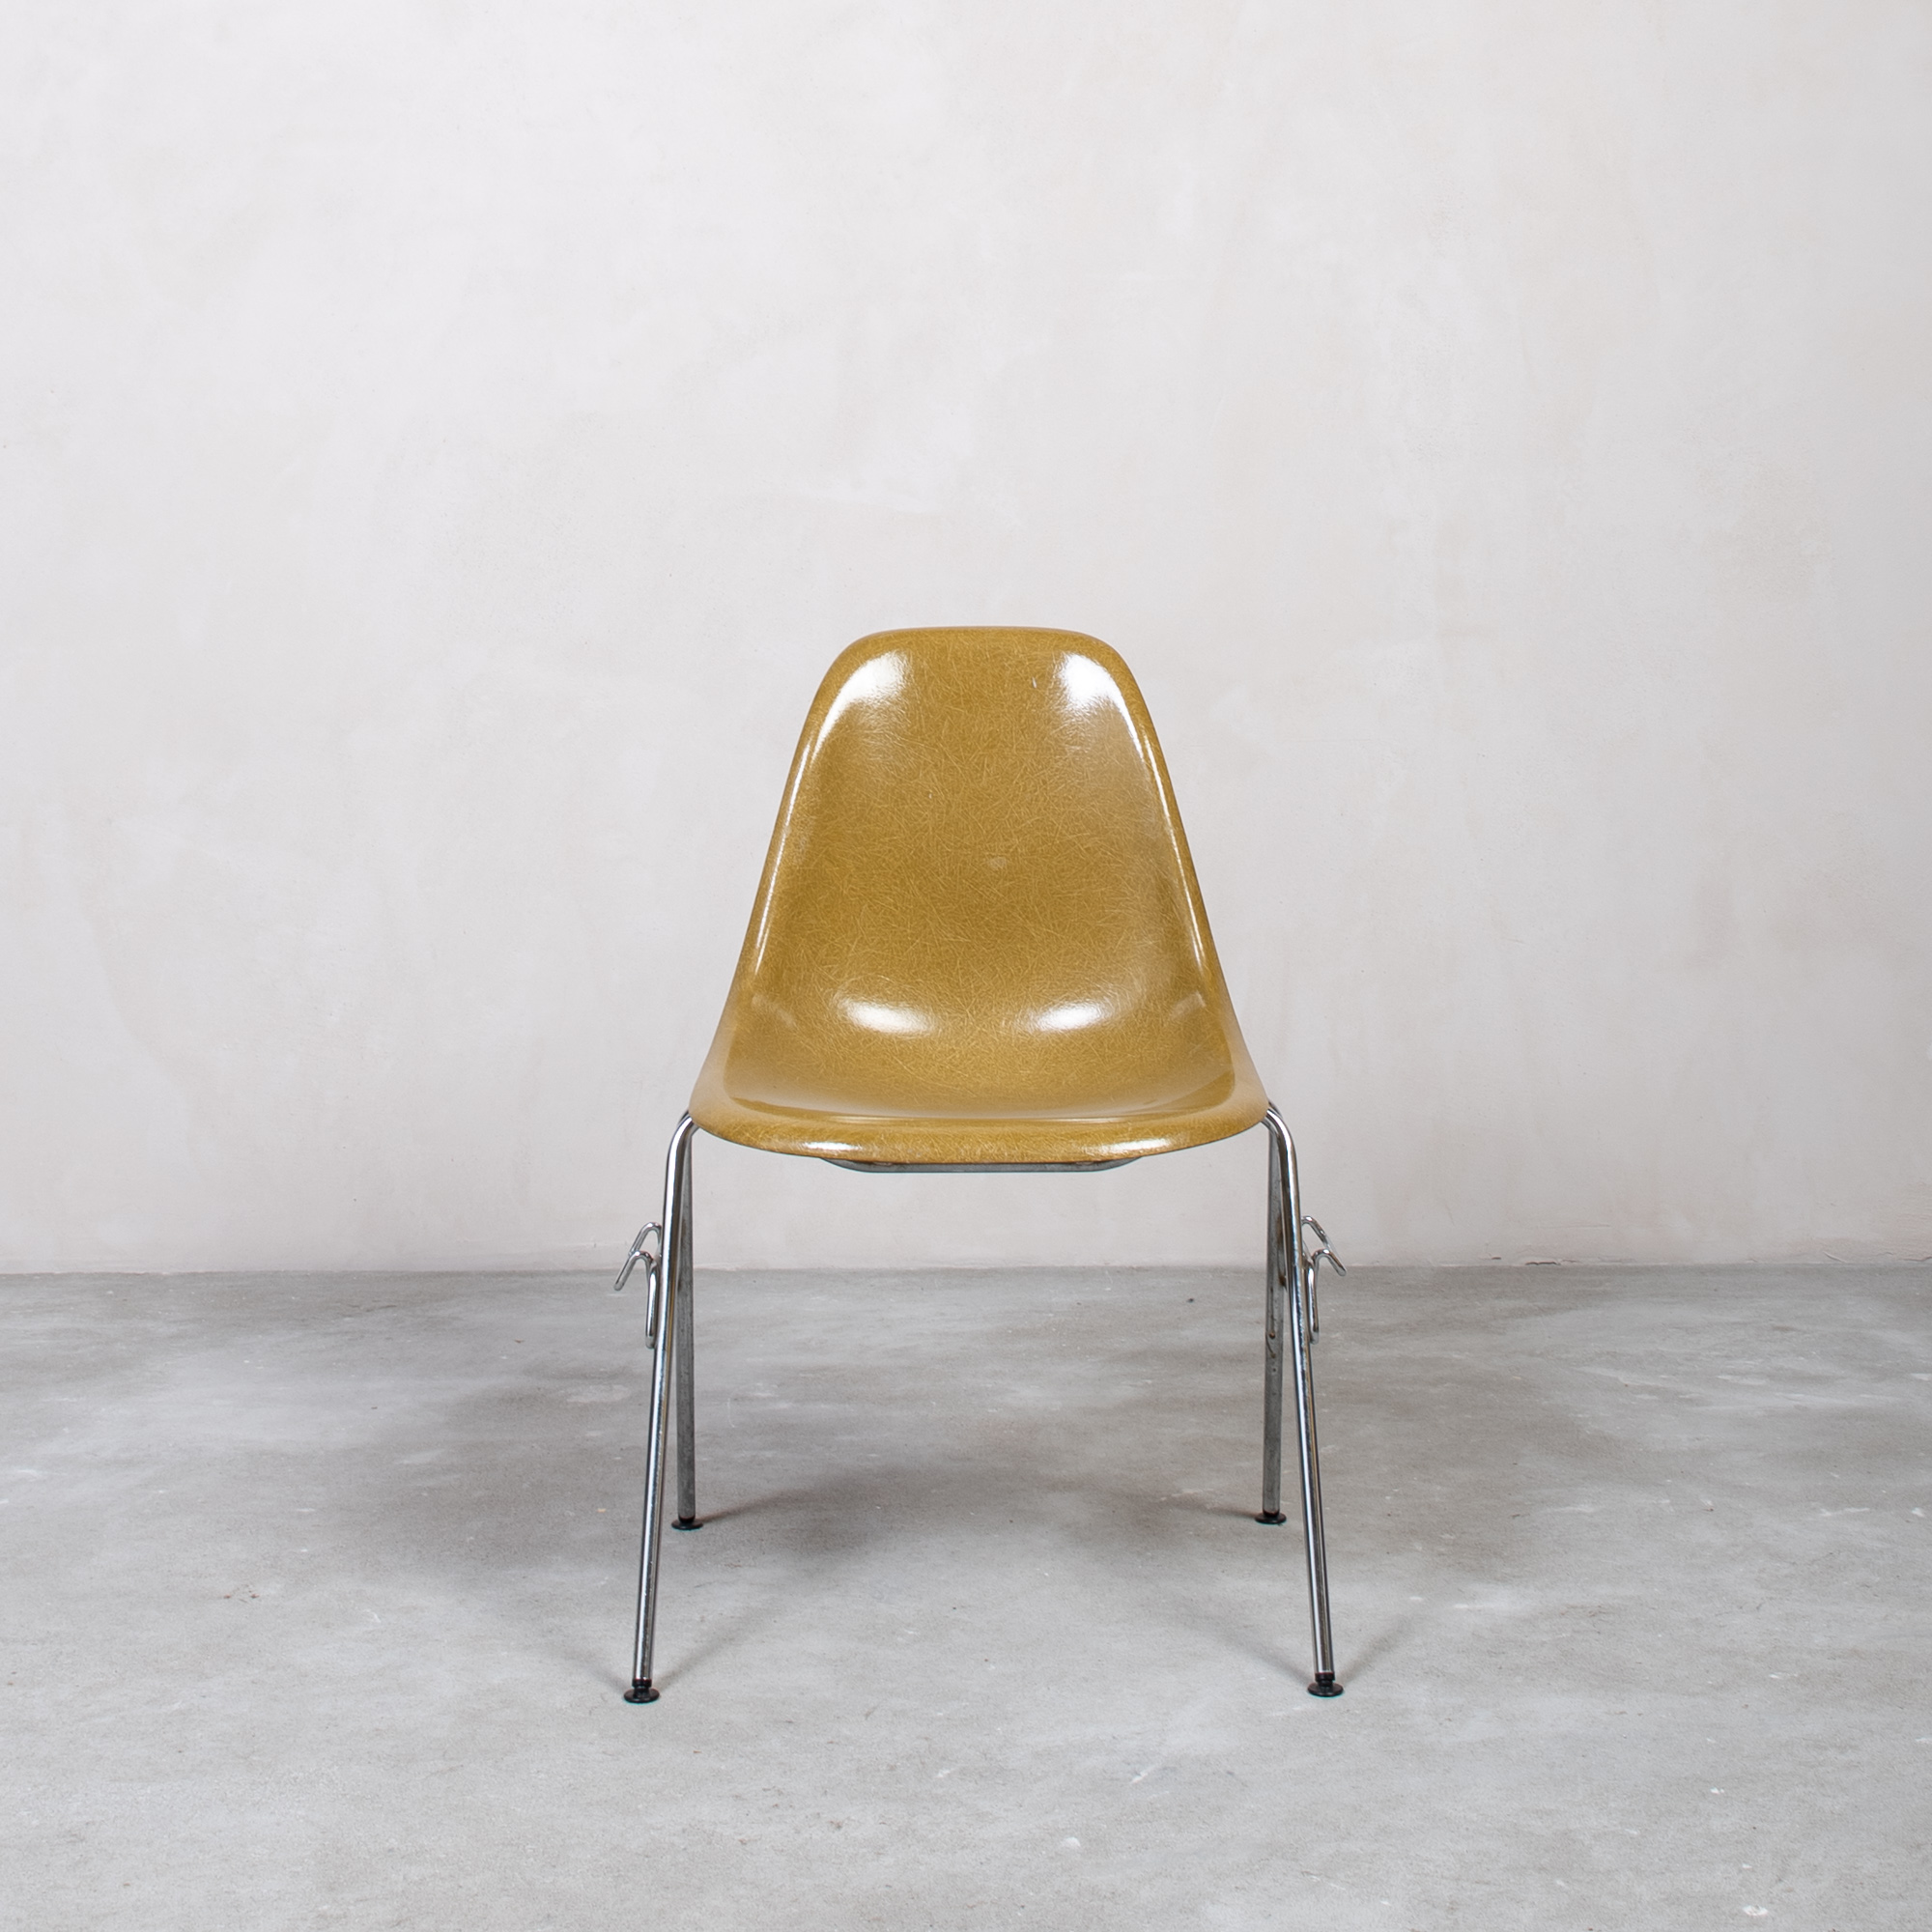 Eames Fiberglass Side Chair by Herman Miller Khaki